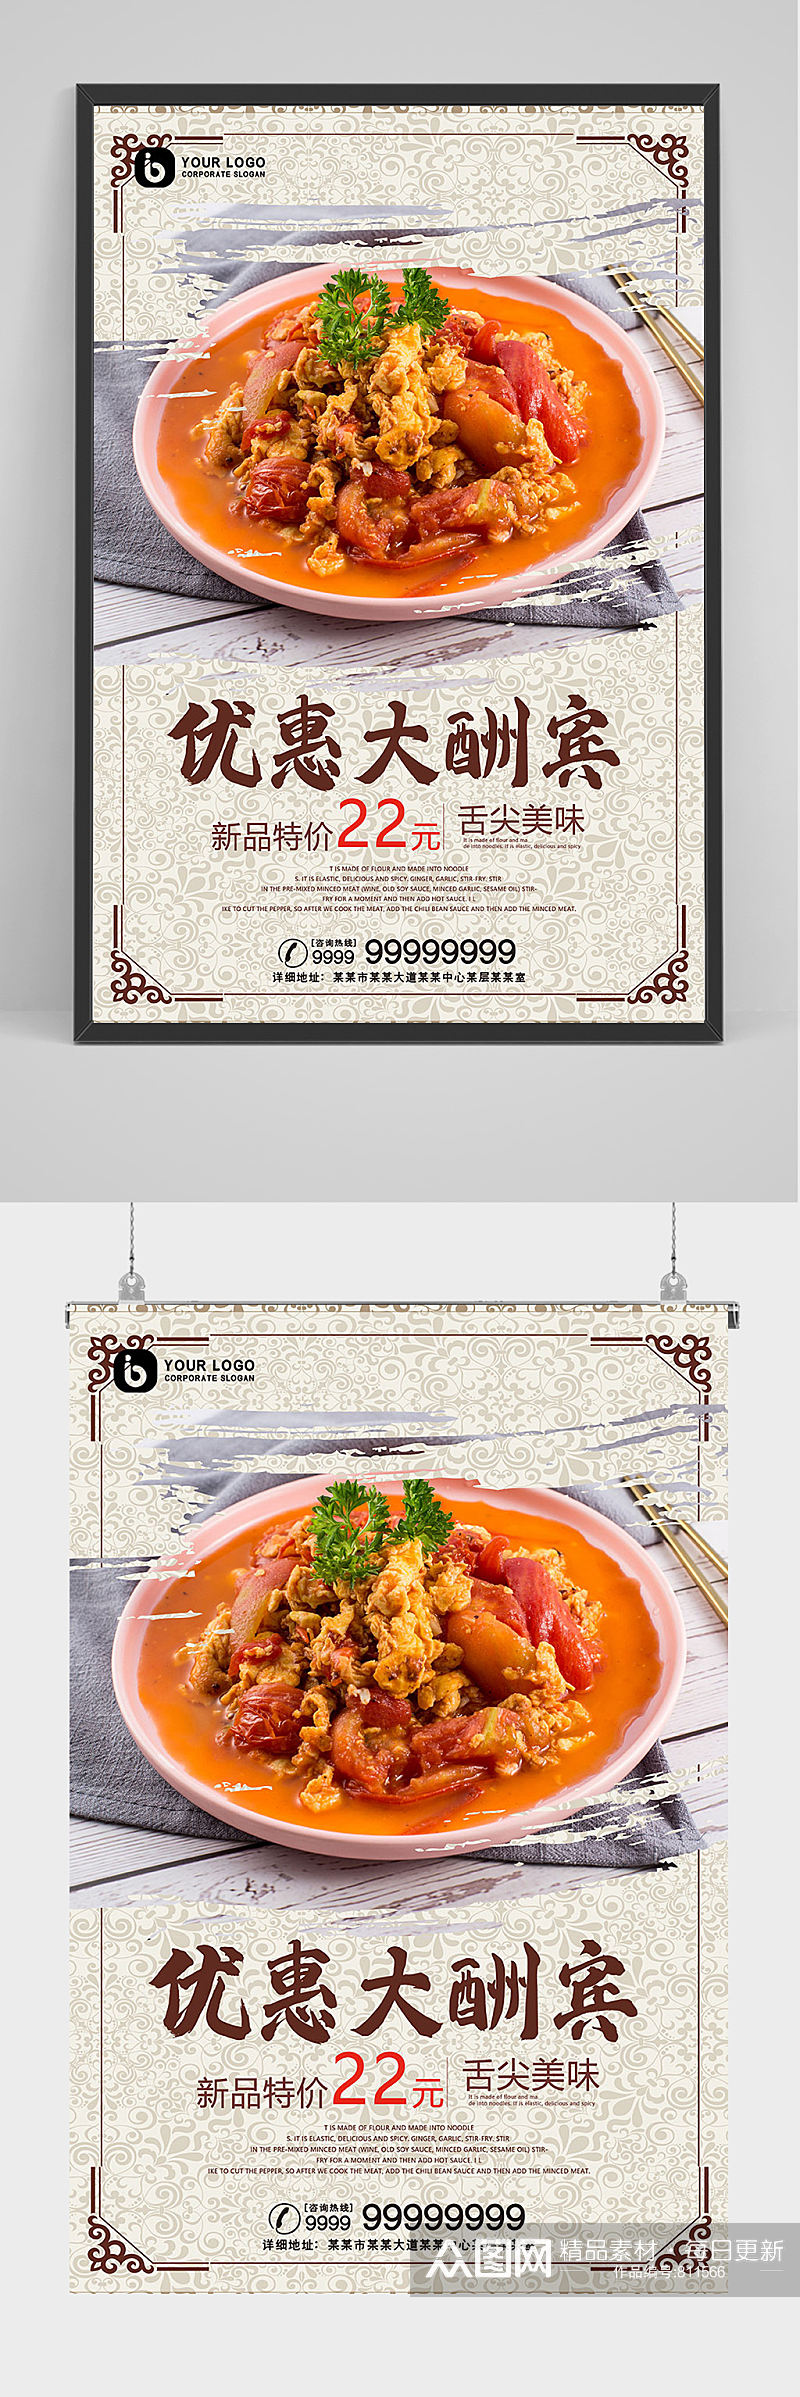 中国风餐饮优惠大酬宾海报设计素材